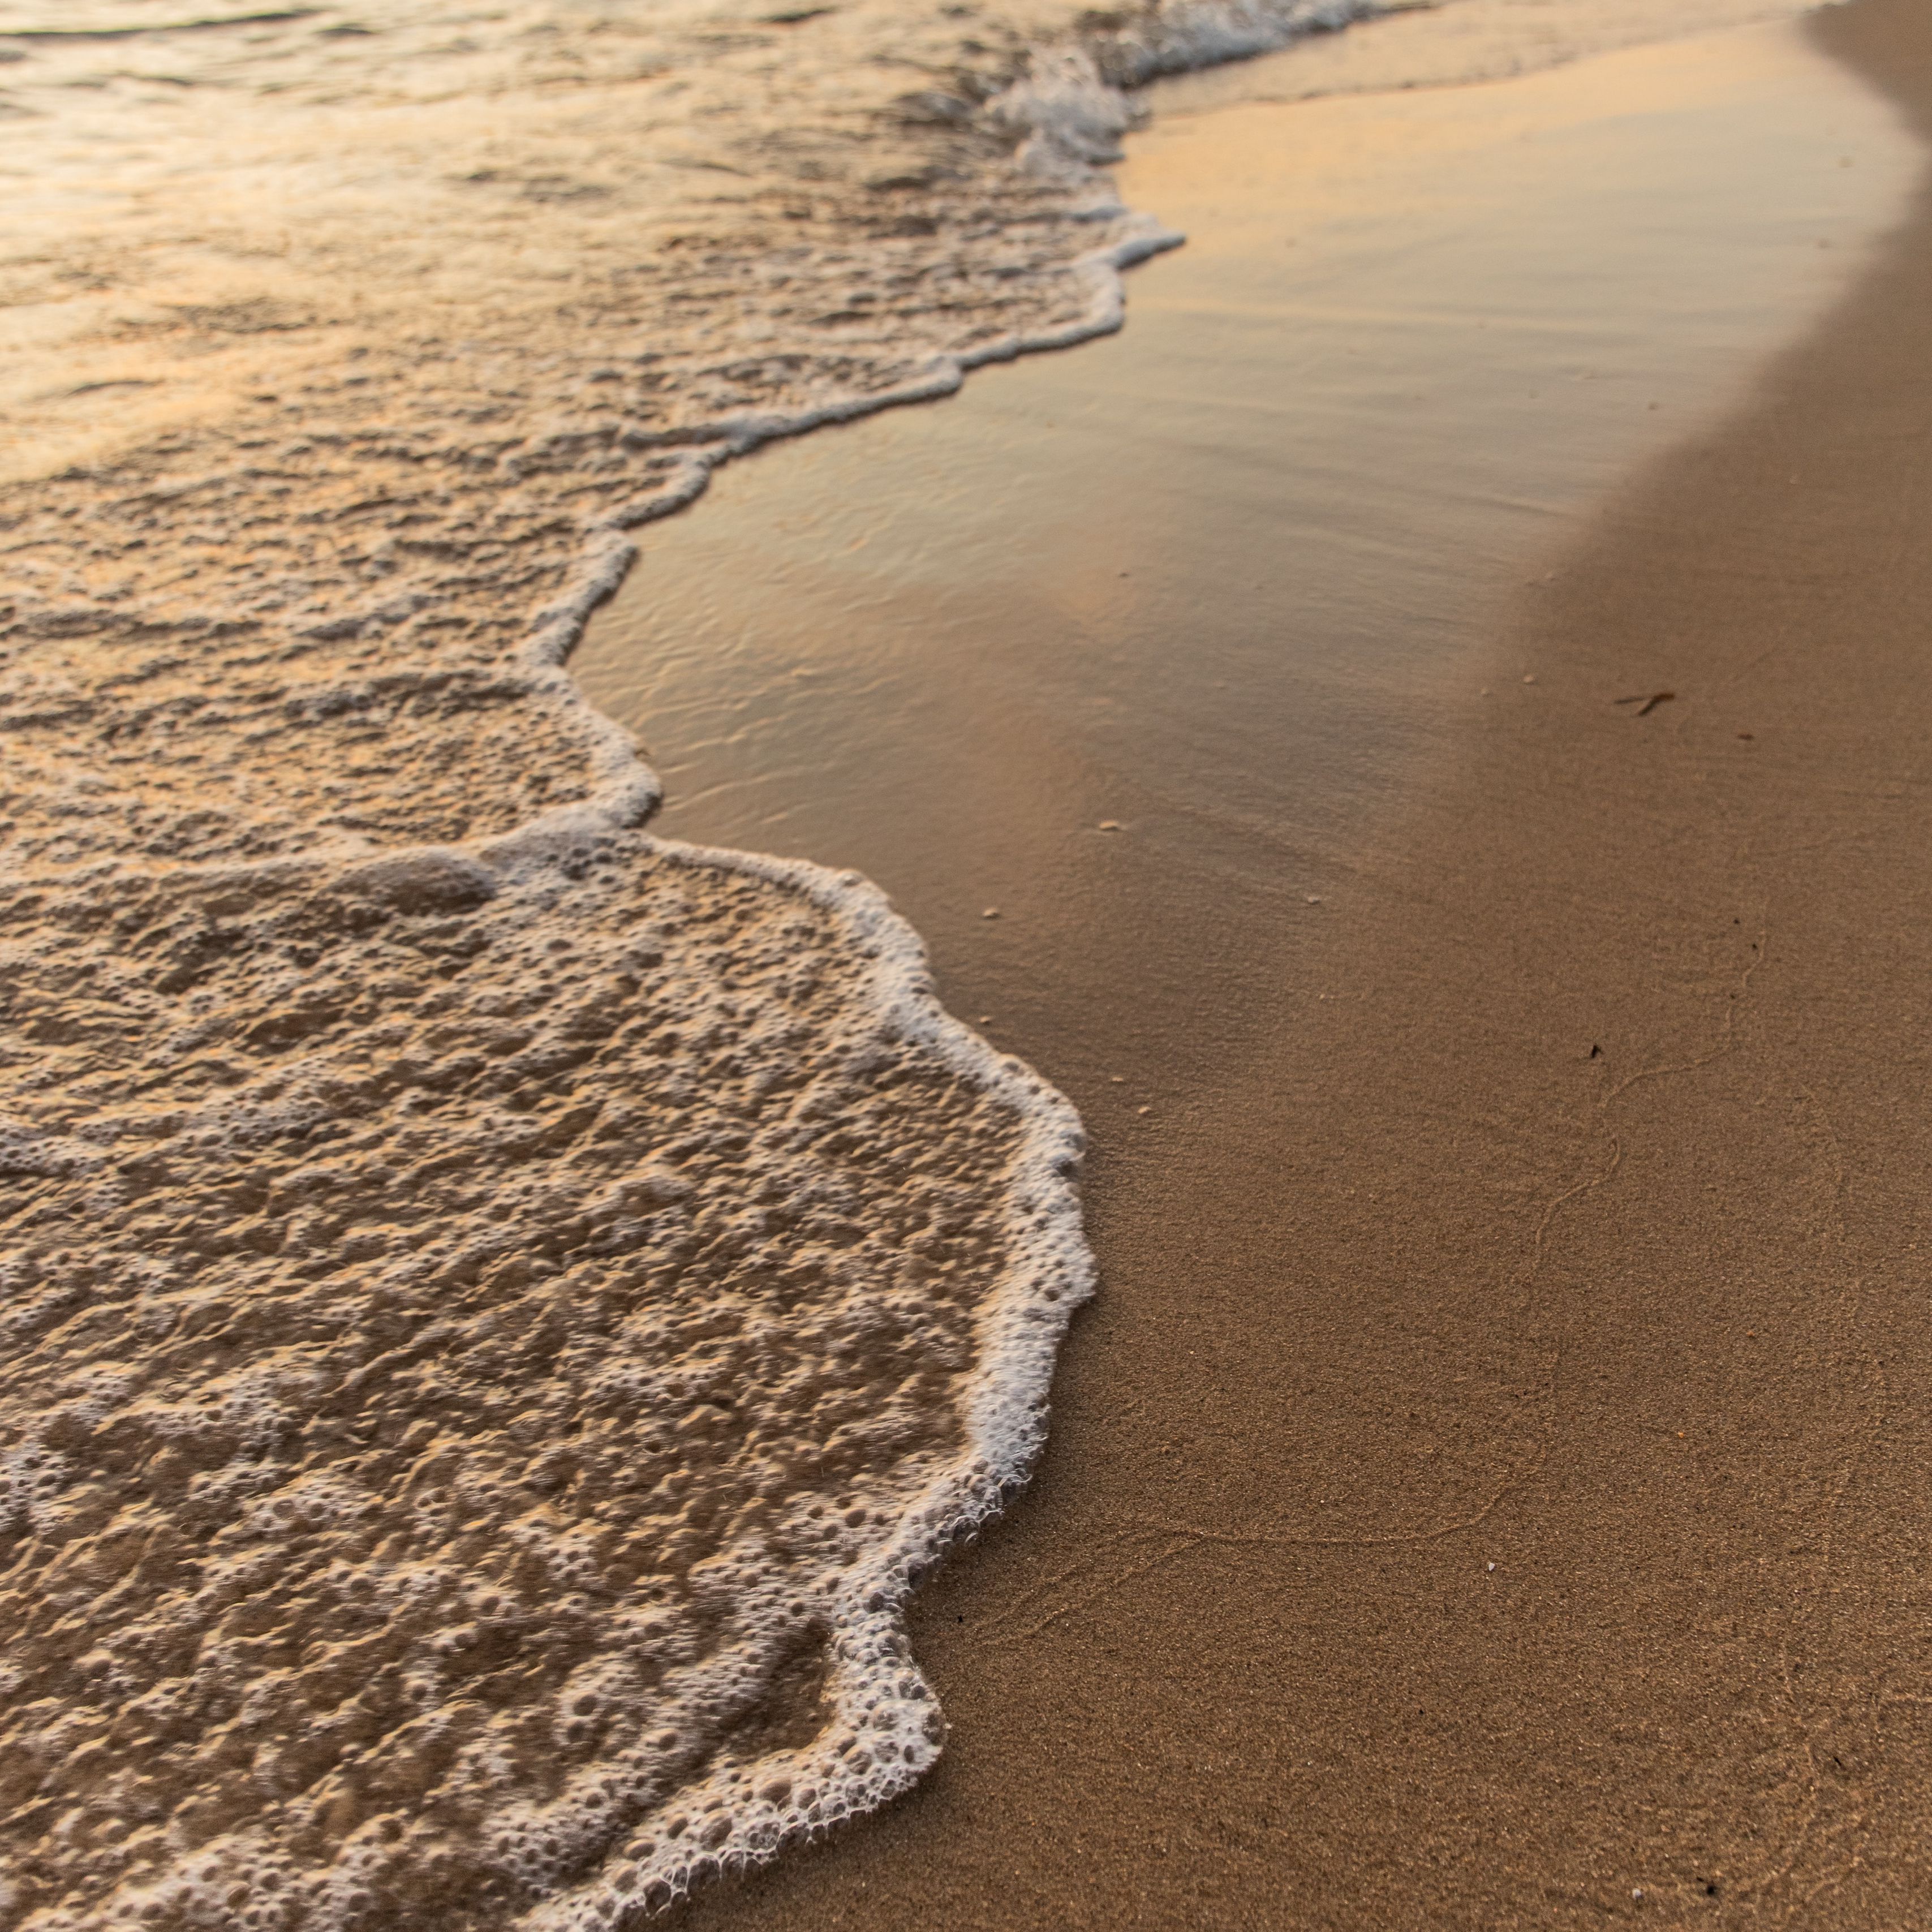 A wave rolls onto the sand at the beach. - Coast, beach